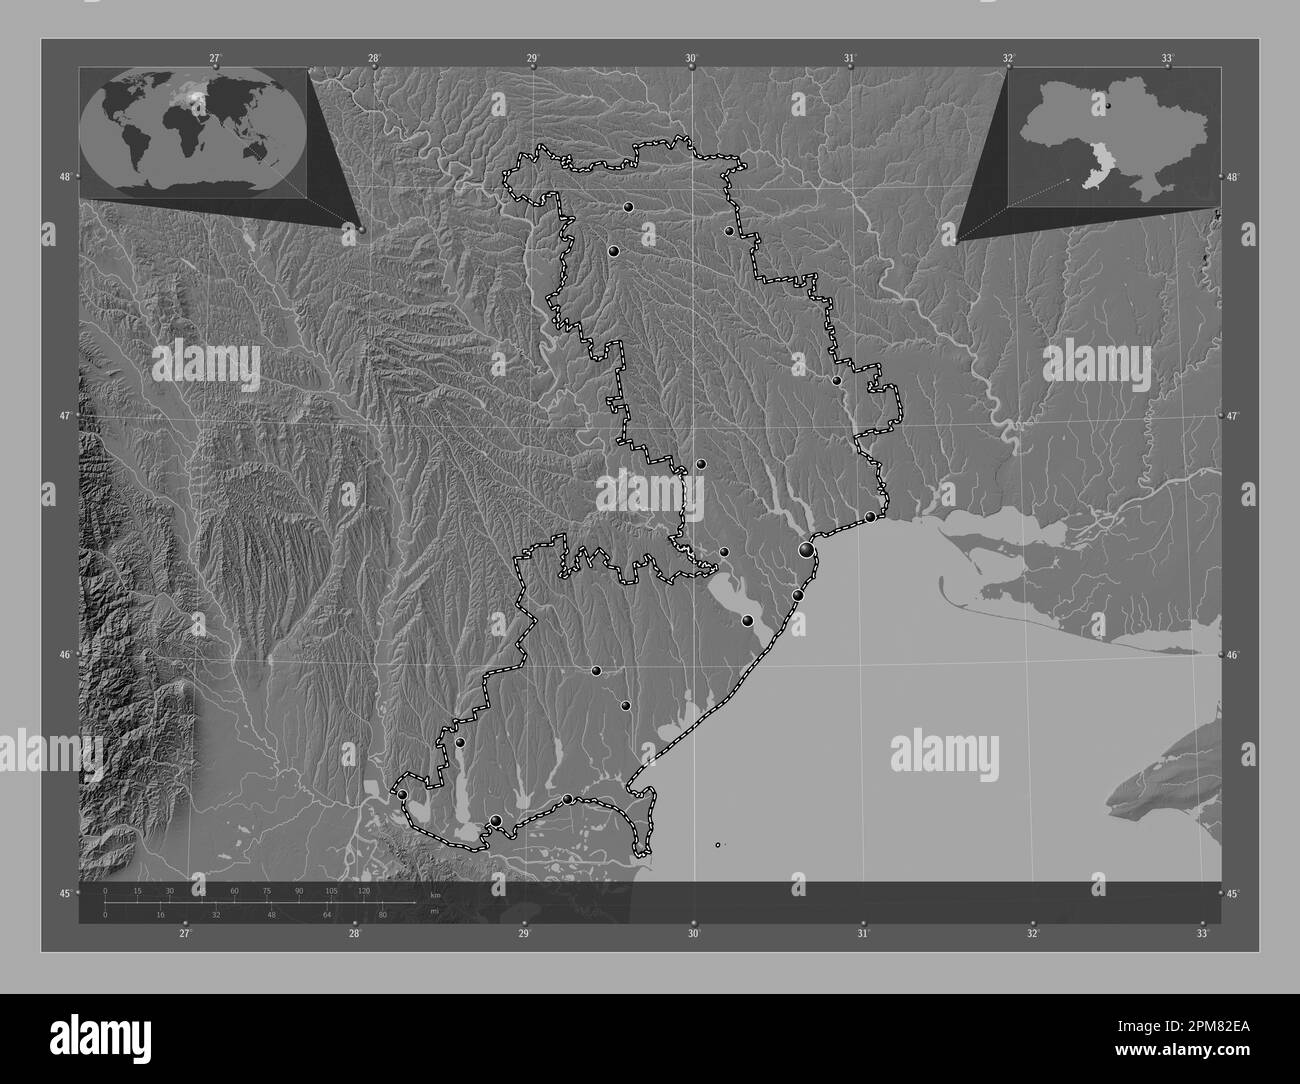 Odessa, Region der Ukraine. Bilevel-Höhenkarte mit Seen und Flüssen. Standorte der wichtigsten Städte der Region. Eckkarten für zusätzliche Standorte Stockfoto